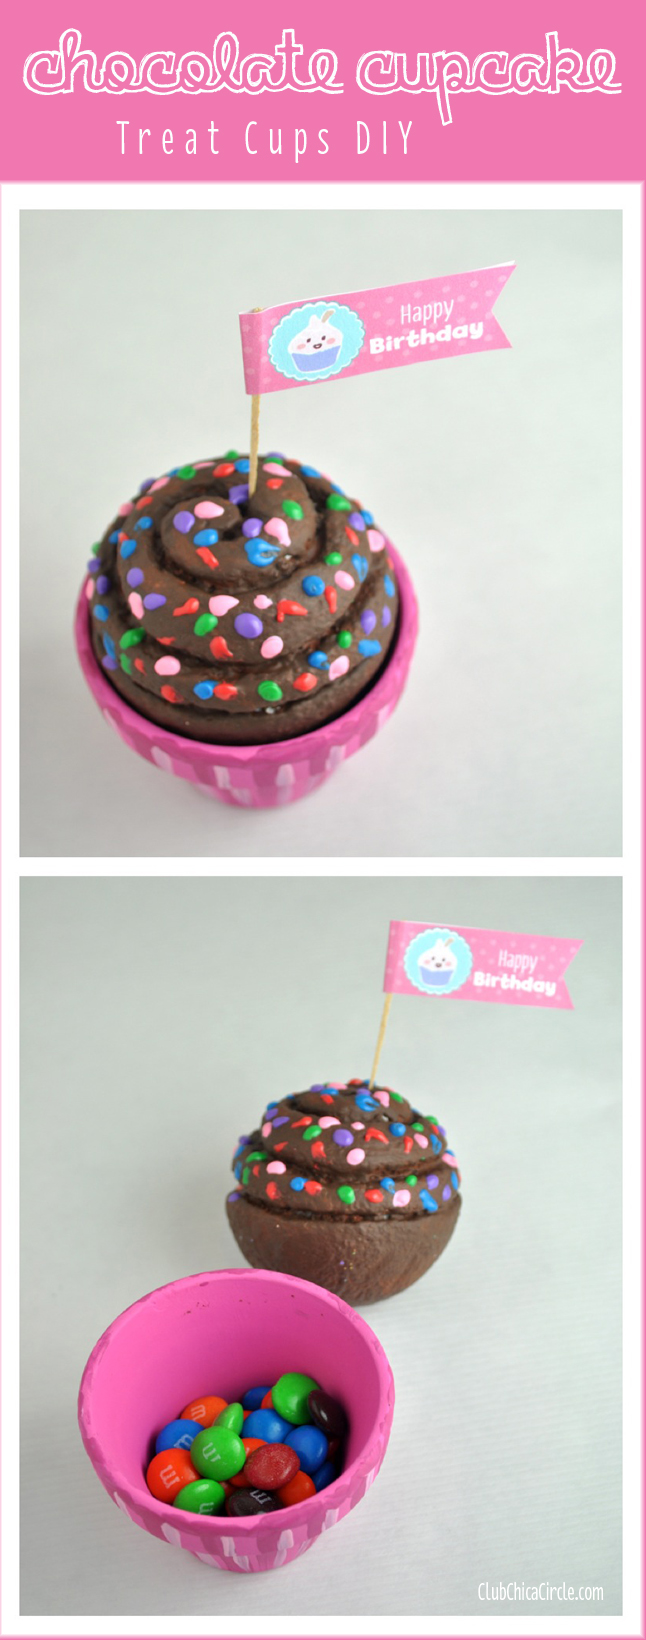 Chocolate Cupcake Treat Cups Craft Idea